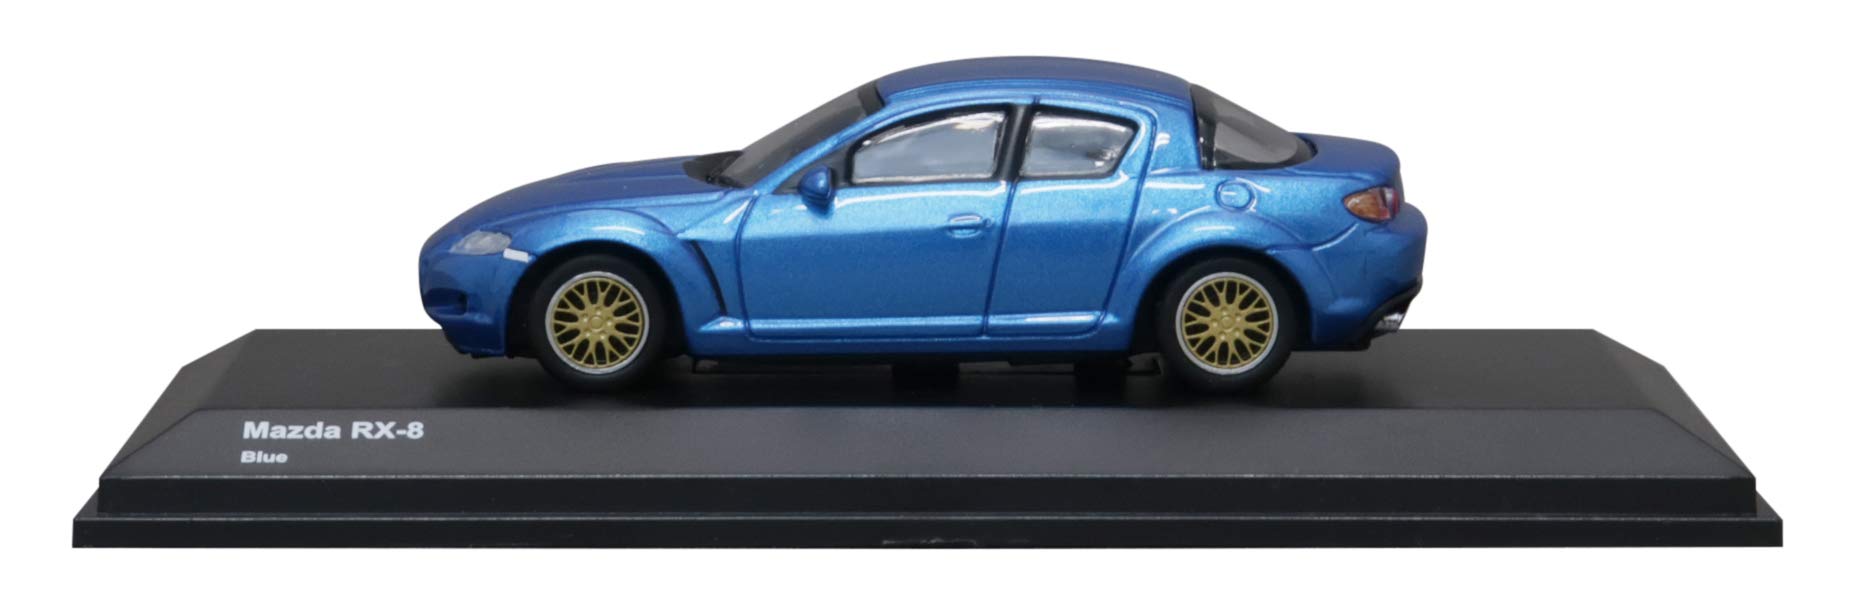 Kyosho Original 1/64 Mazda Rx-8 Blue Finished Product Limited Japanese Scale Models